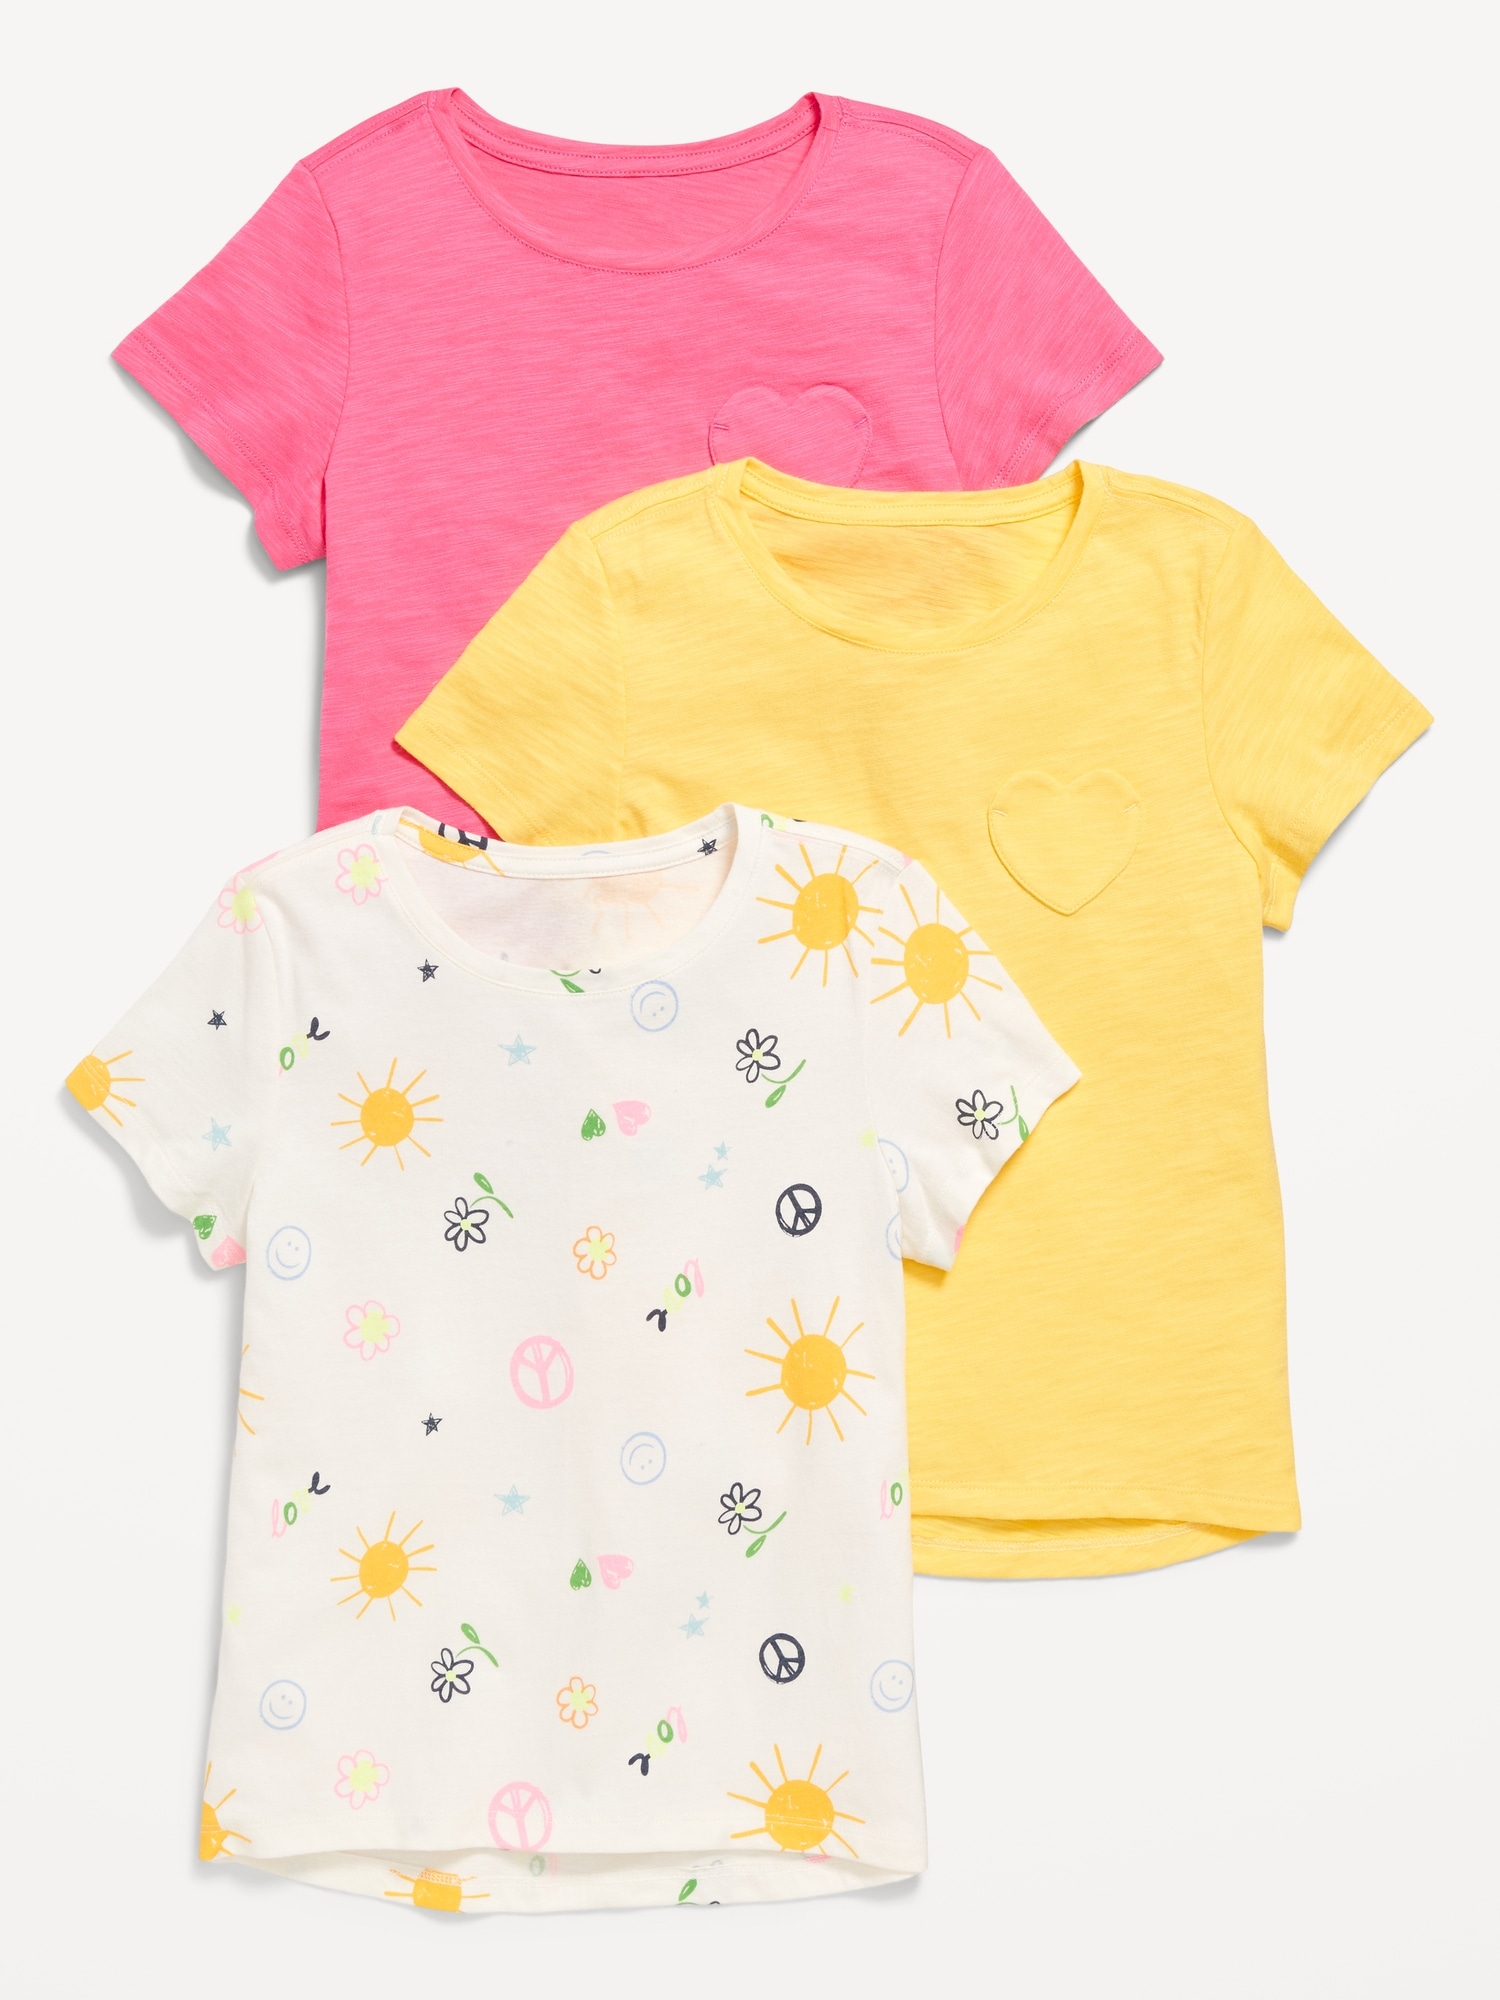 Softest Short-Sleeve T-Shirt Variety 3-Pack for Girls